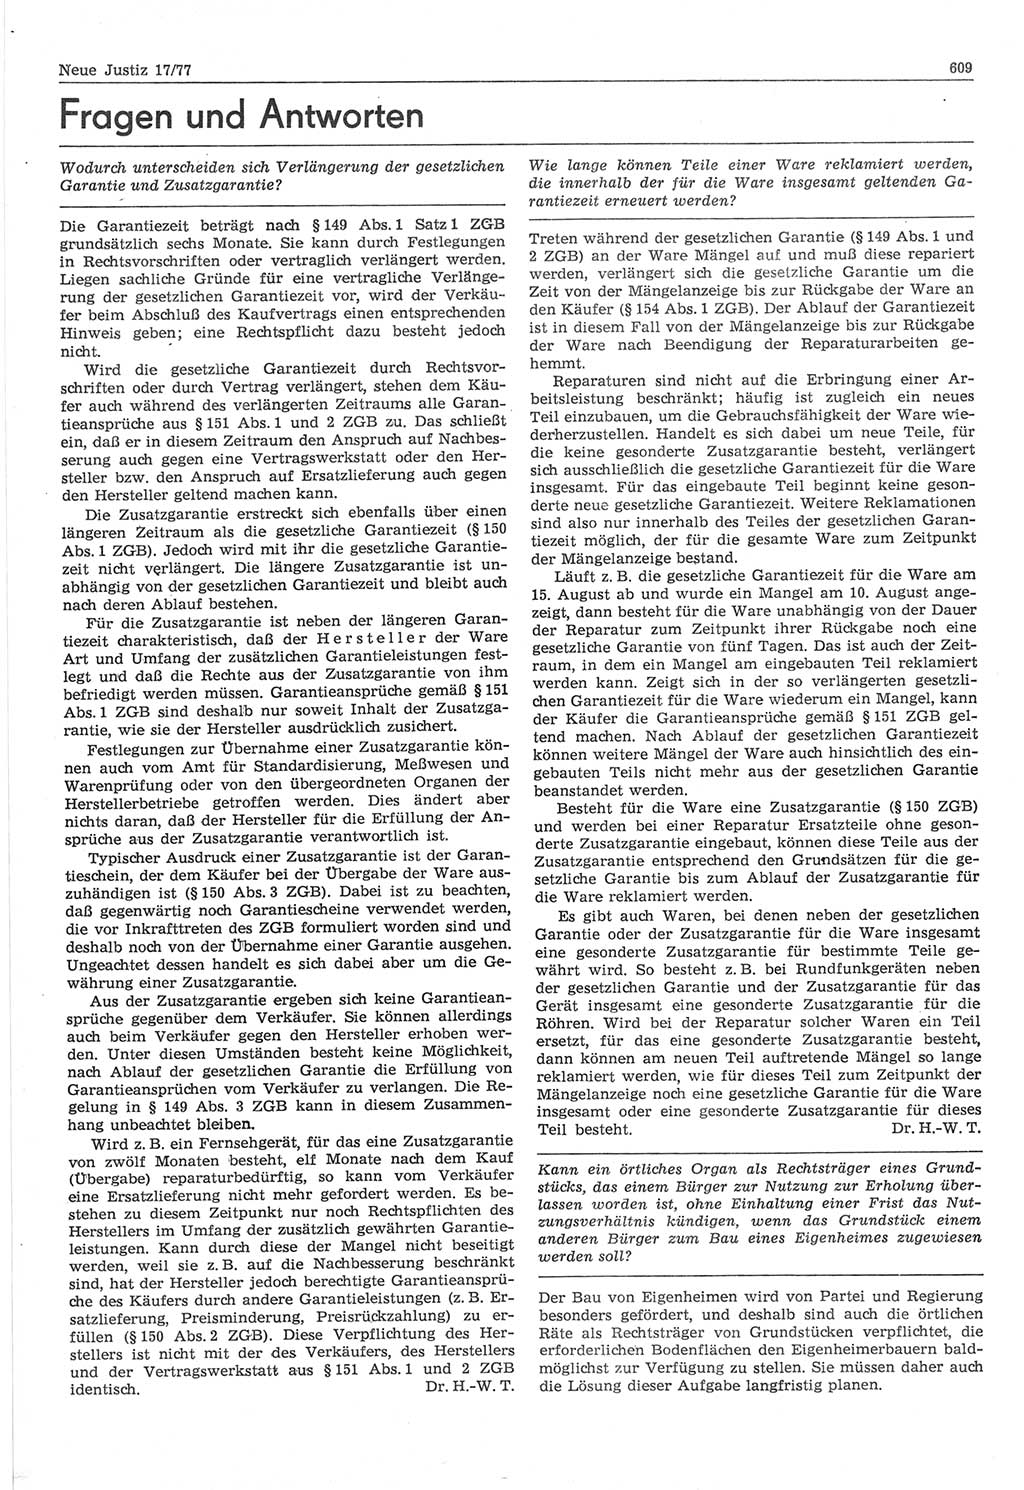 Neue Justiz (NJ), Zeitschrift für Recht und Rechtswissenschaft-Zeitschrift, sozialistisches Recht und Gesetzlichkeit, 31. Jahrgang 1977, Seite 609 (NJ DDR 1977, S. 609)